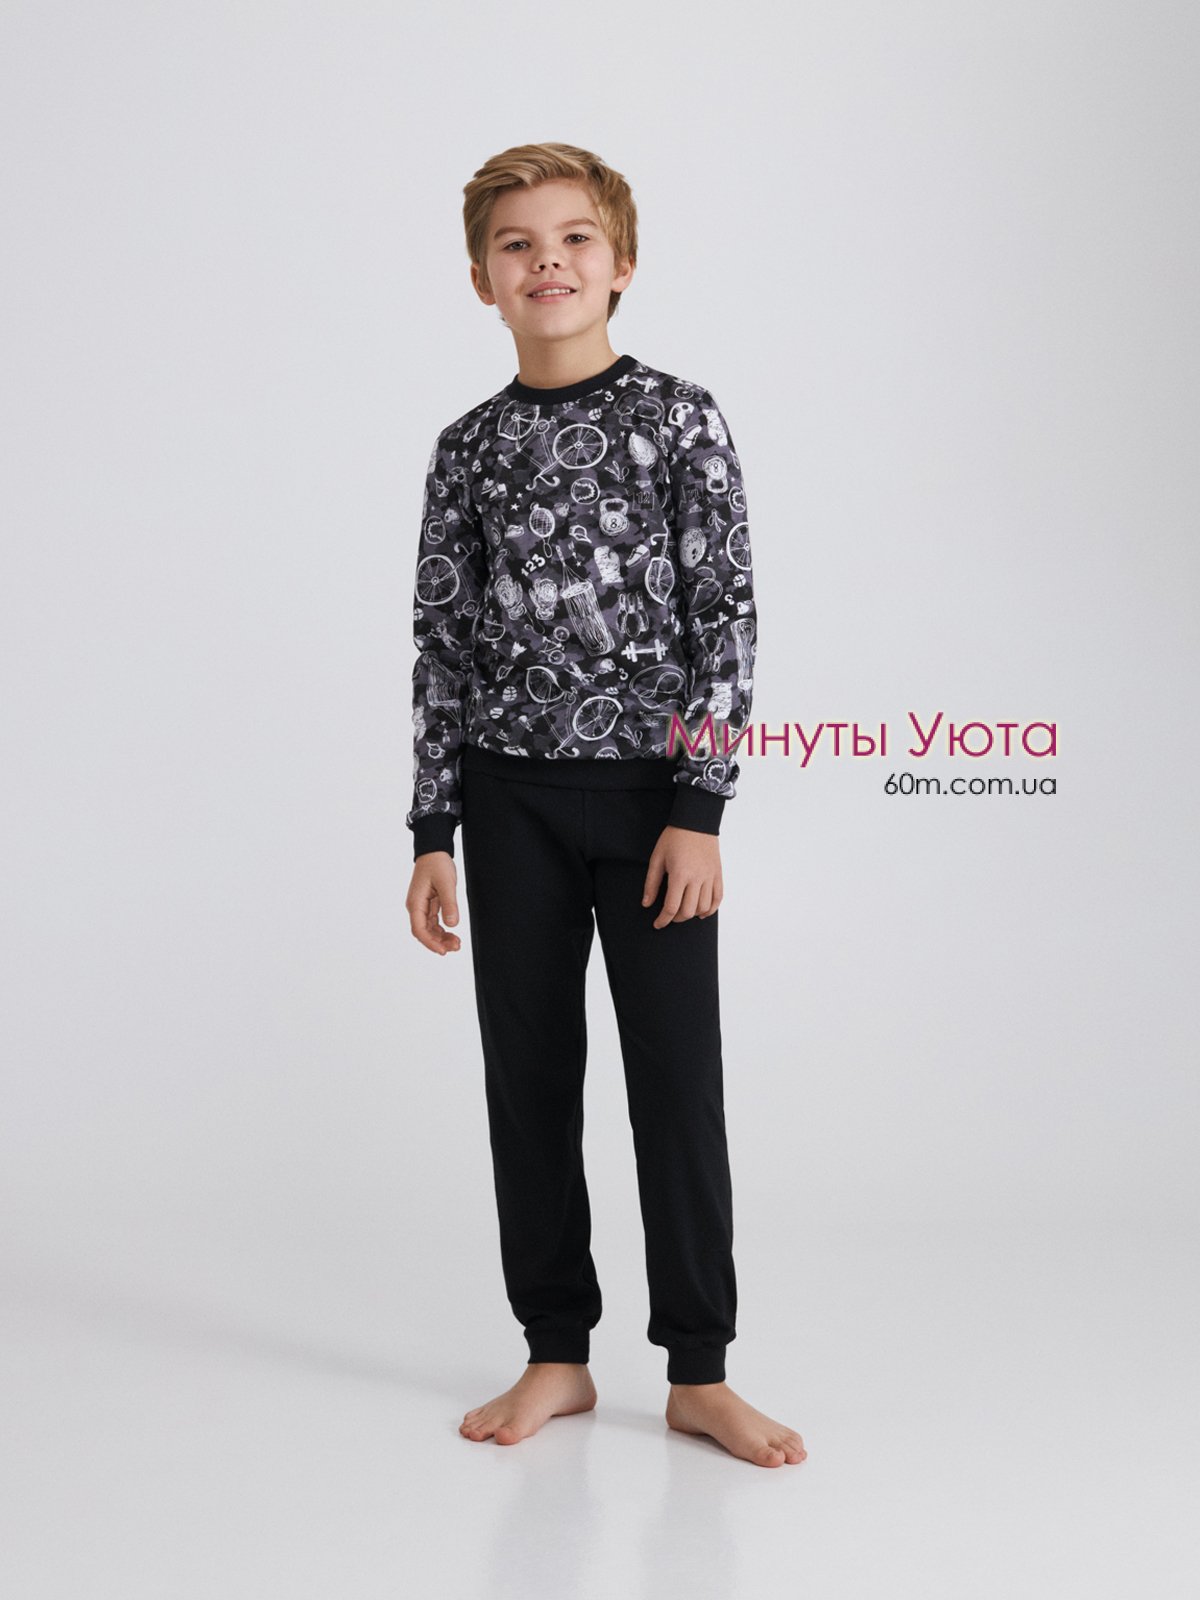 Пижама для мальчика серо-черного цвета в графический принт на свитшоте 